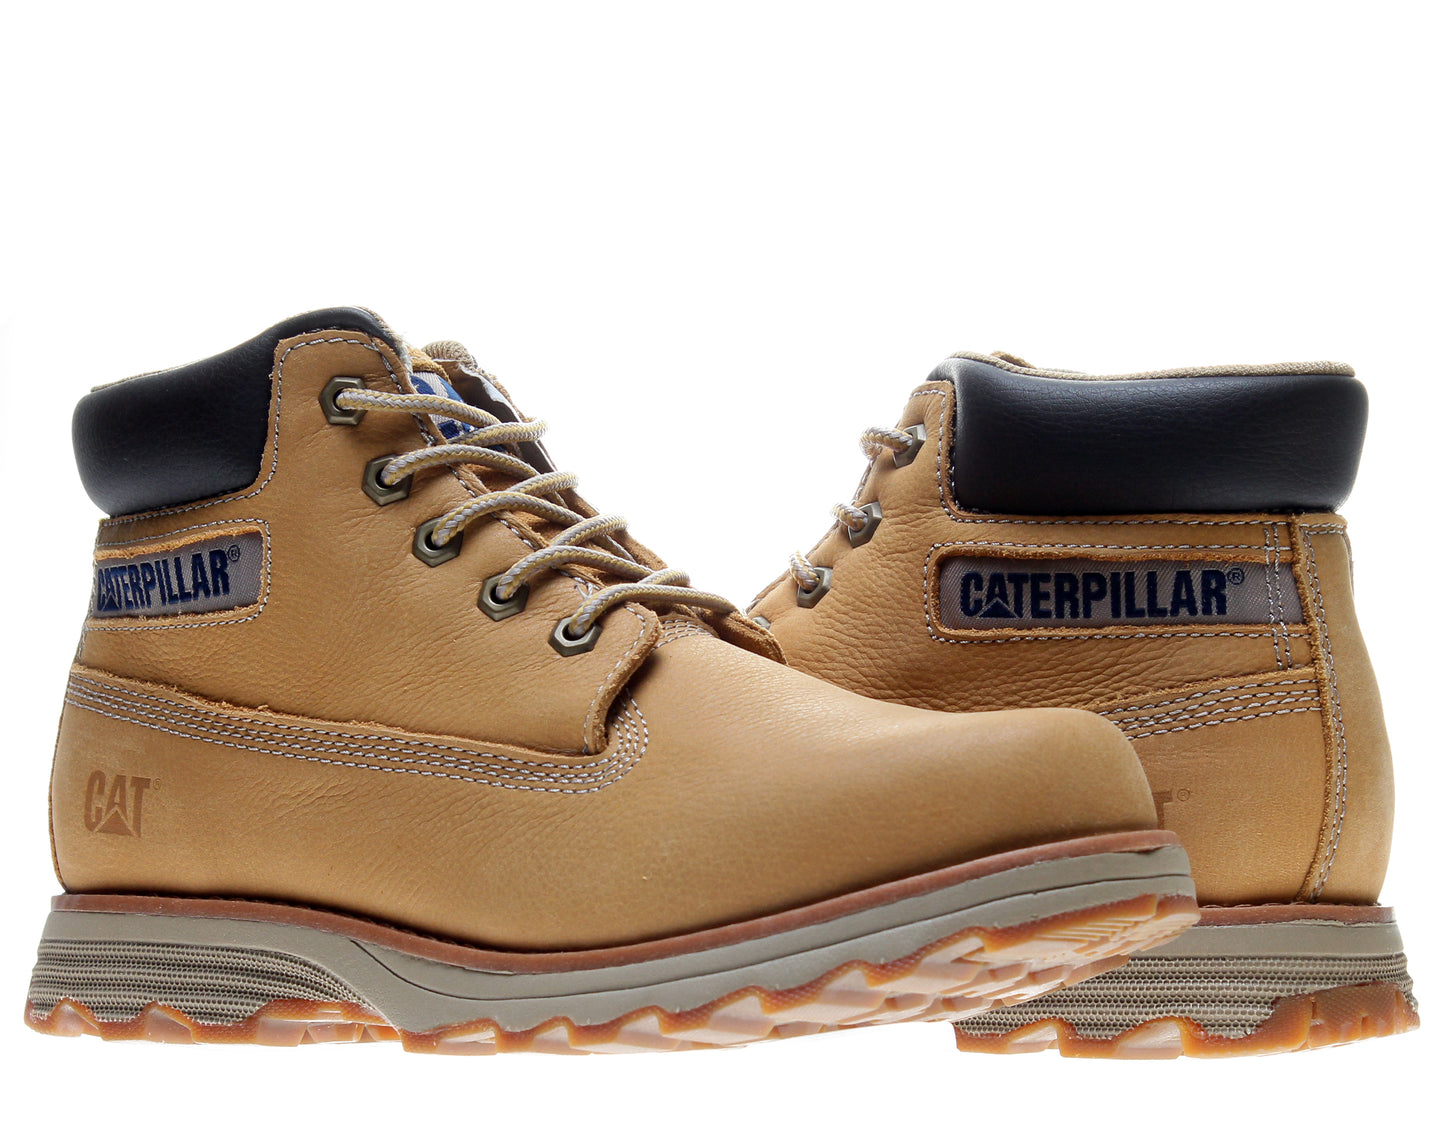 Caterpillar Founder Men's Boots